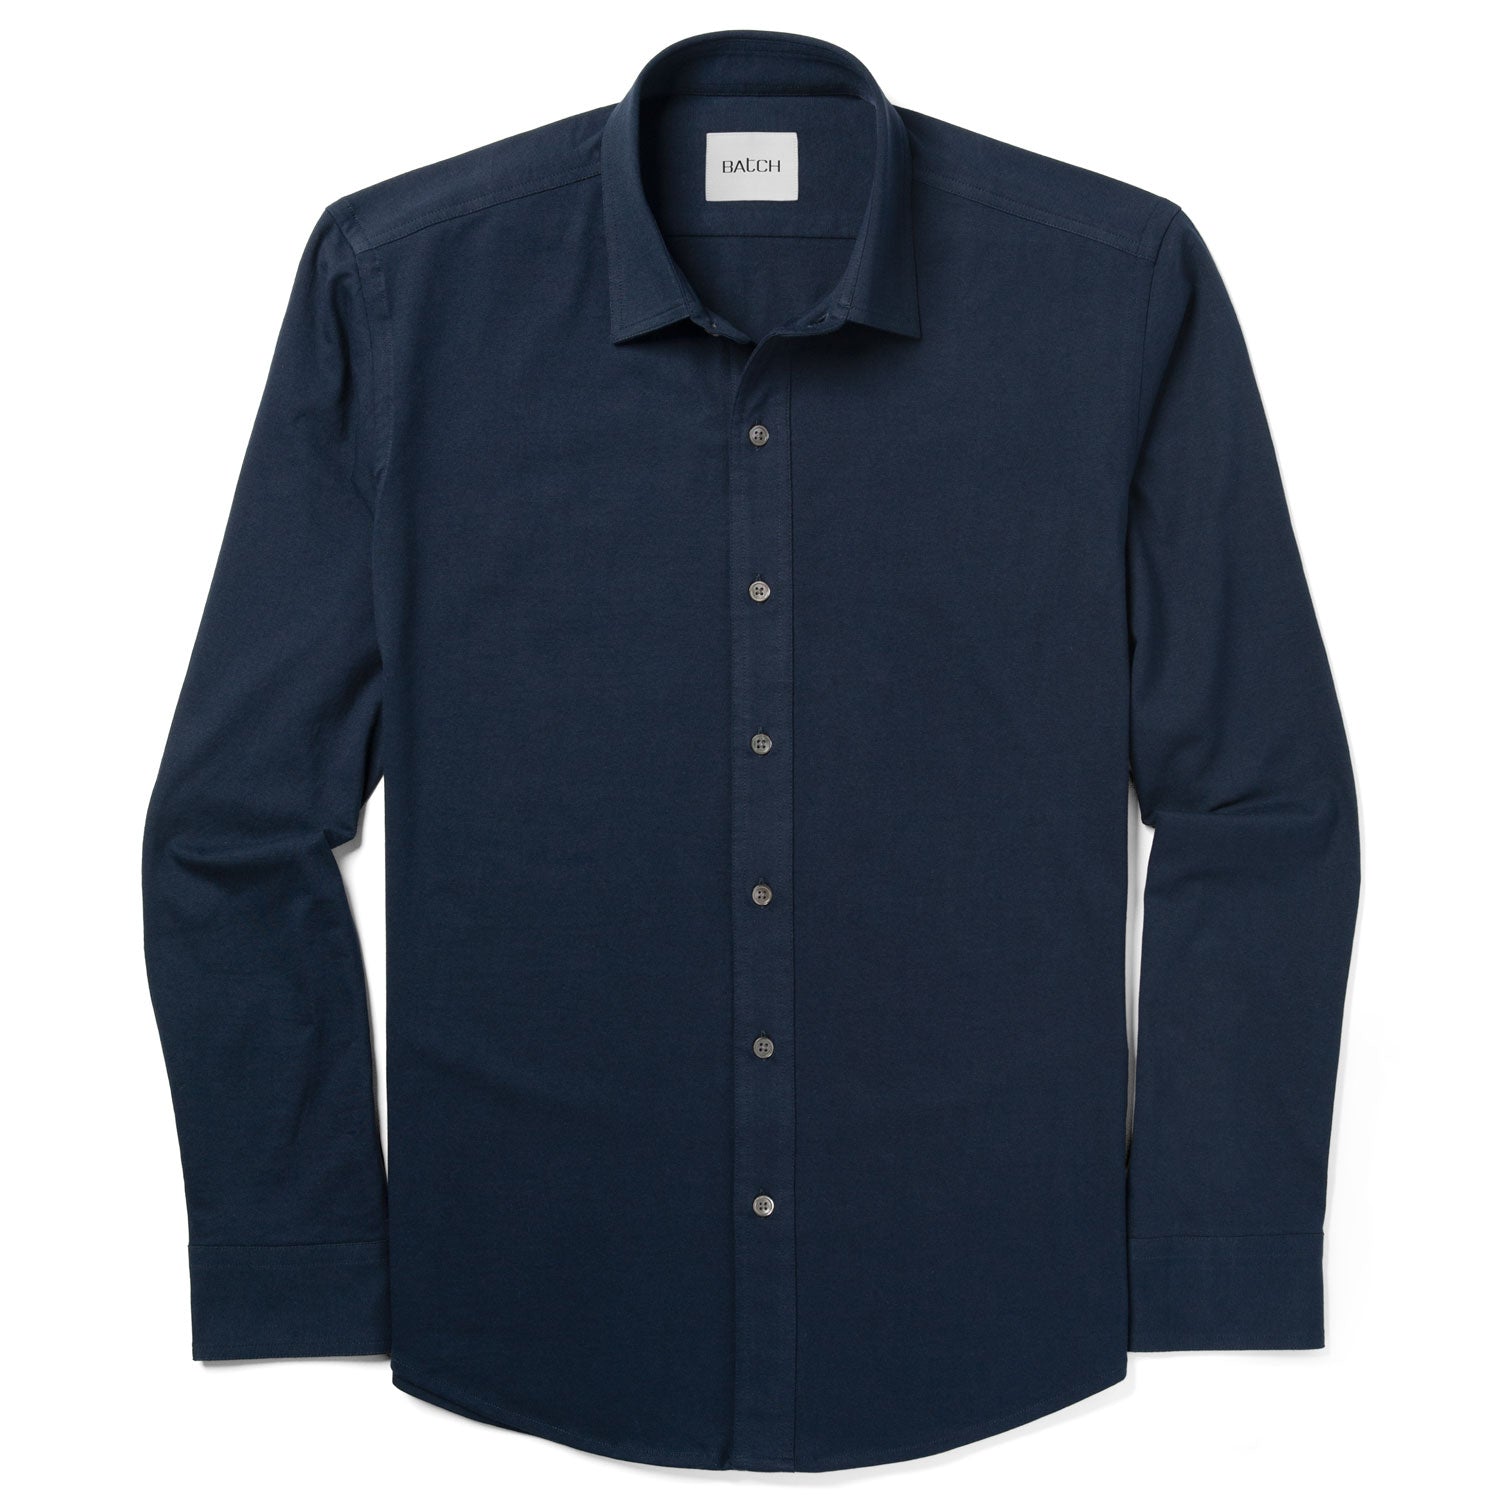 Essential T-Shirt Shirt - Navy Cotton Jersey